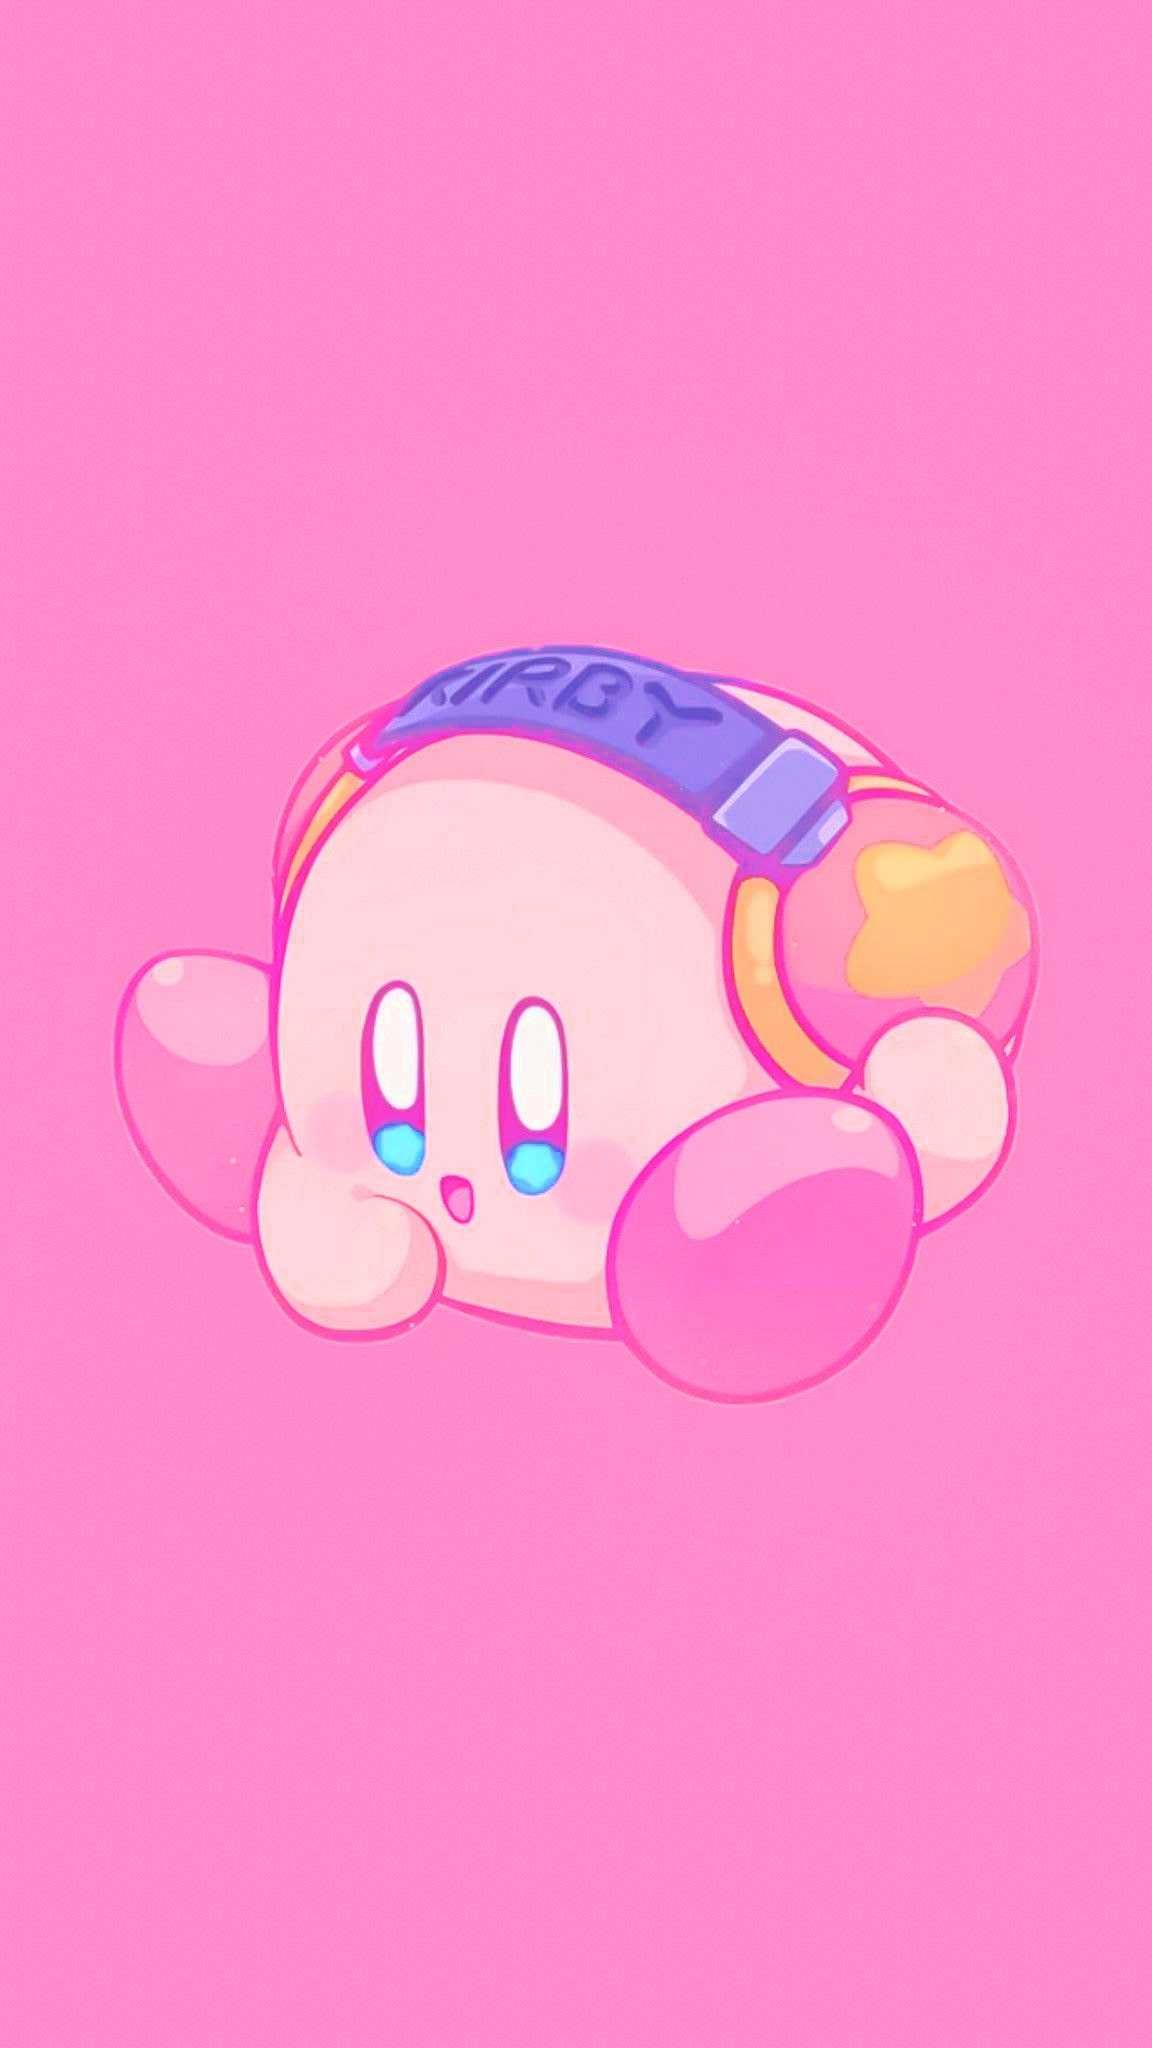 Khám phá thế giới Kirby đầy màu sắc và mang tính thẩm mỹ cao với những hình nền Kirby aesthetic. Mỗi lần nhìn vào chúng là bạn sẽ nhận được động lực để làm việc cũng như tràn đầy niềm tin vào cuộc sống.